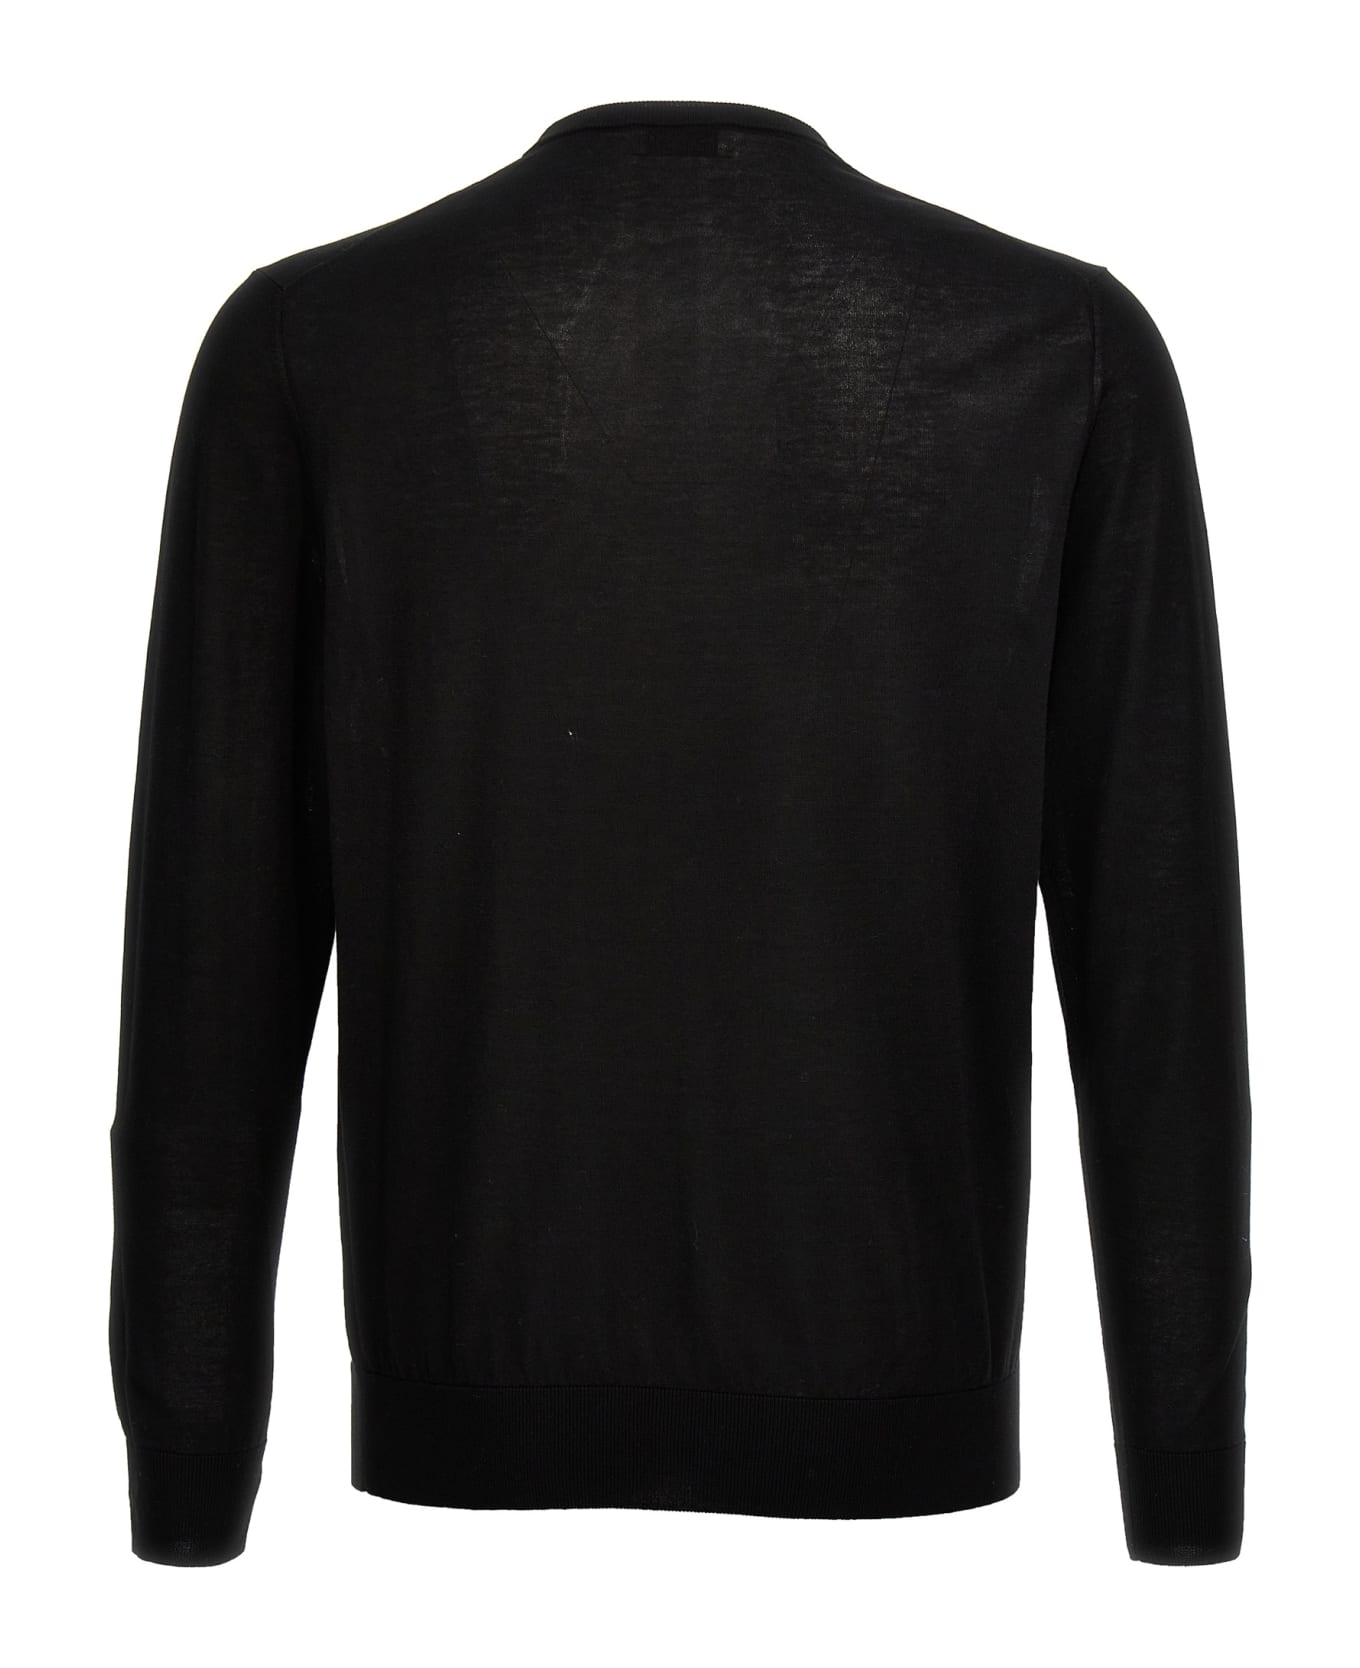 Ballantyne Cotton Sweater - Black   ニットウェア